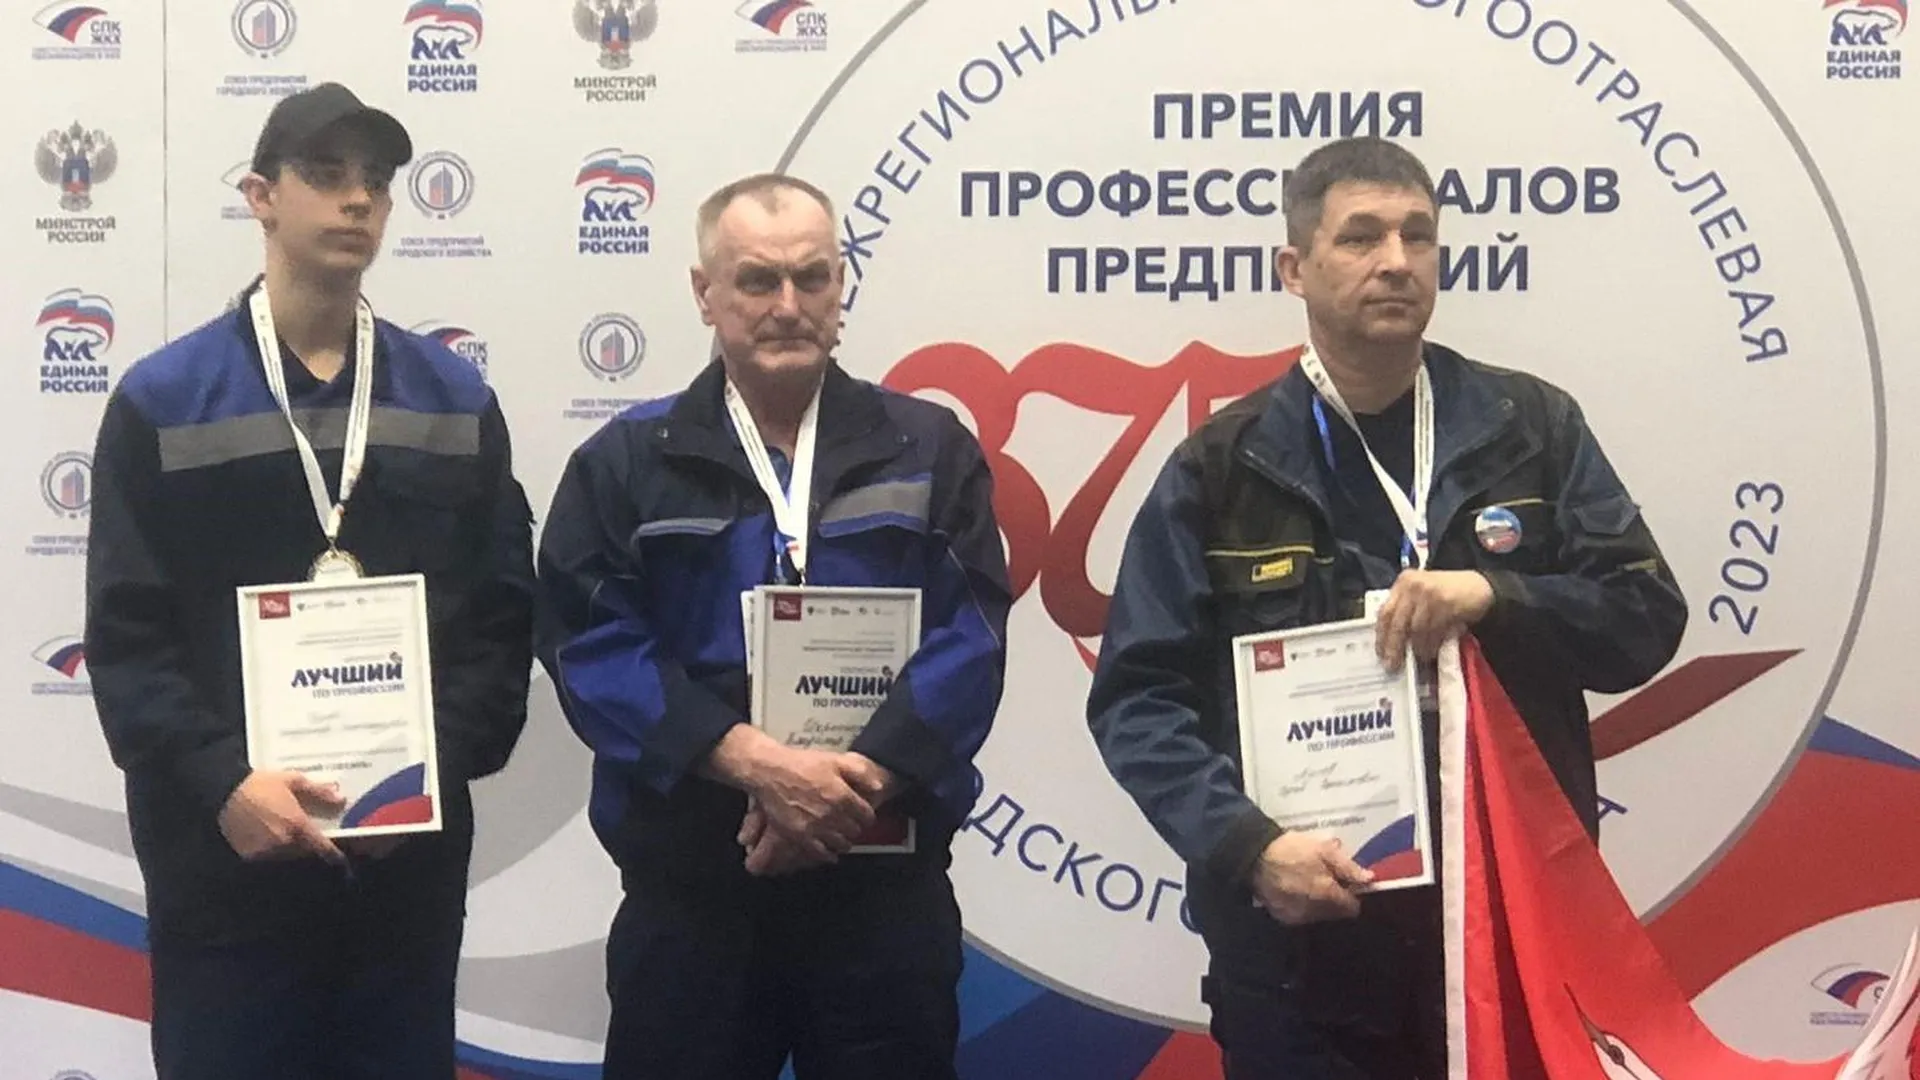 Подмосковный студент Владимир Дулов стал лучшим слесарем на областной премии профессионалов